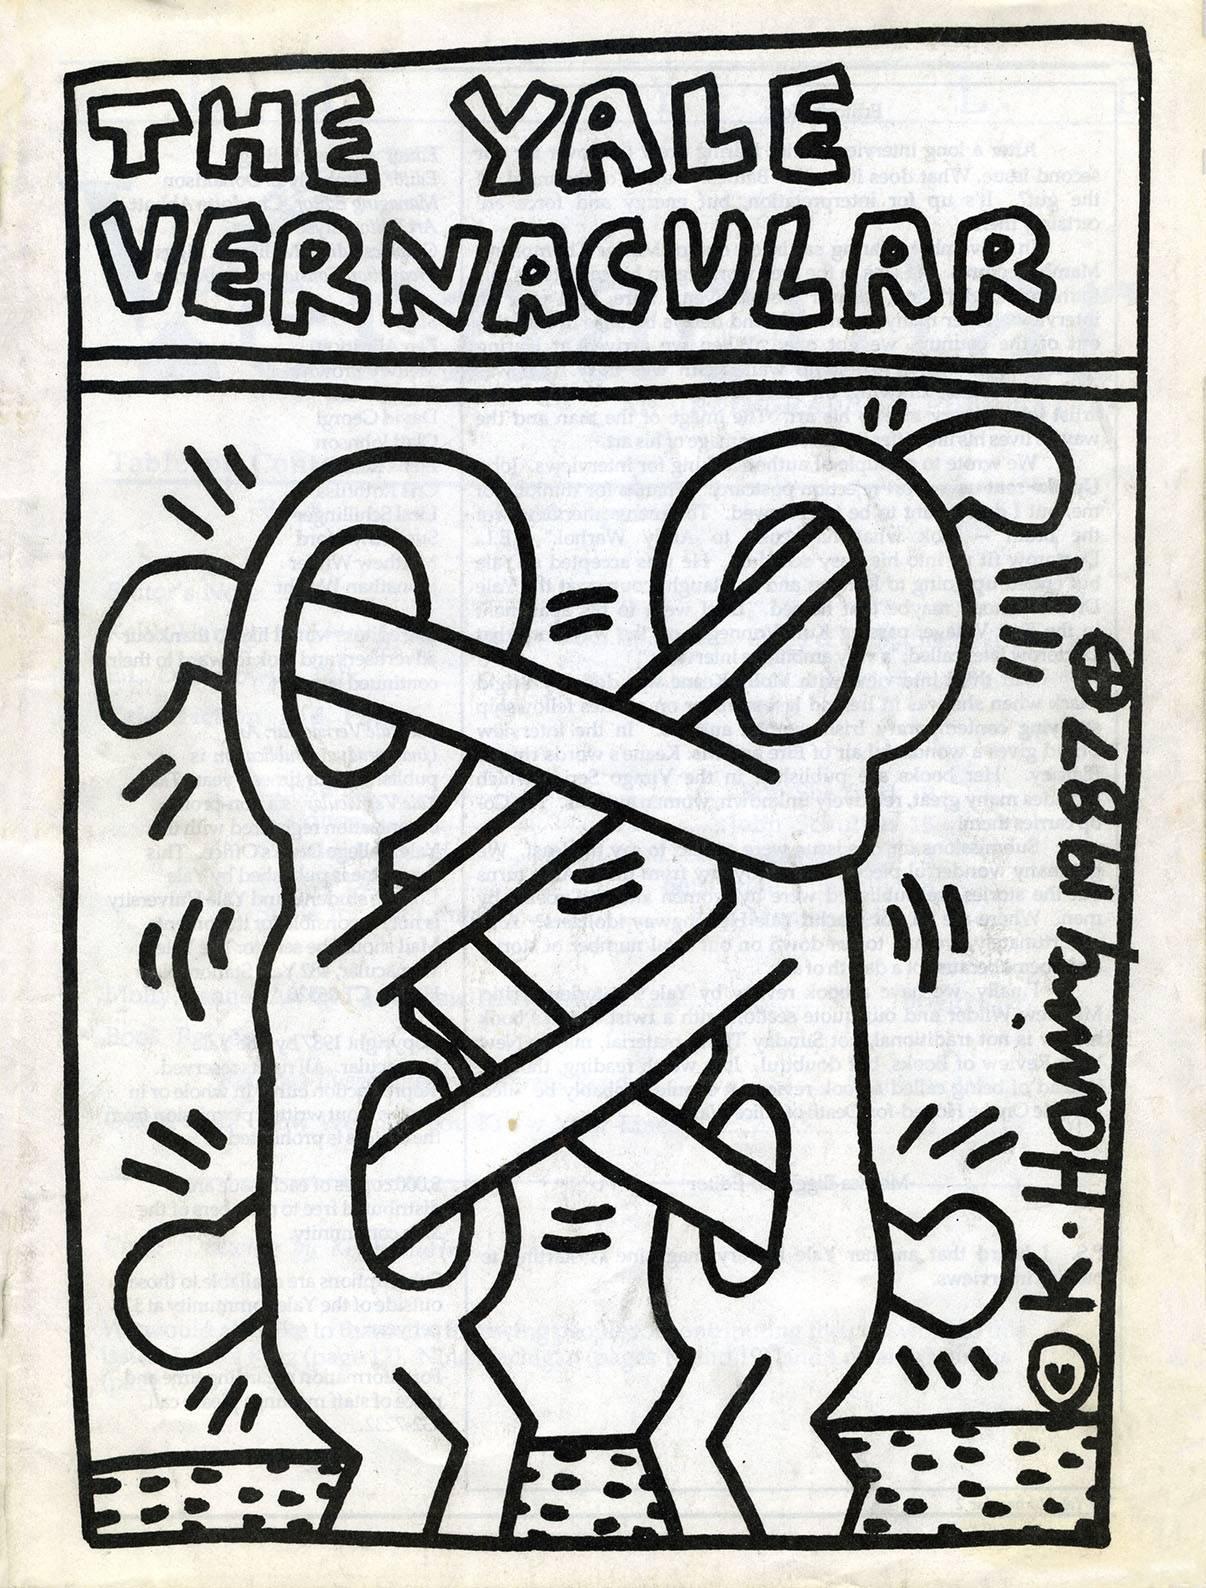 Keith Haring 1987:
The Yale Vernacular 1987, mit dem klassischen Titelbild von Keith Haring. Ein seltenes, herausragendes Sammlerstück von Keith Haring aus den 1980er Jahren, das gerahmt fantastisch aussehen würde. Mit einer auffälligen Unterschrift